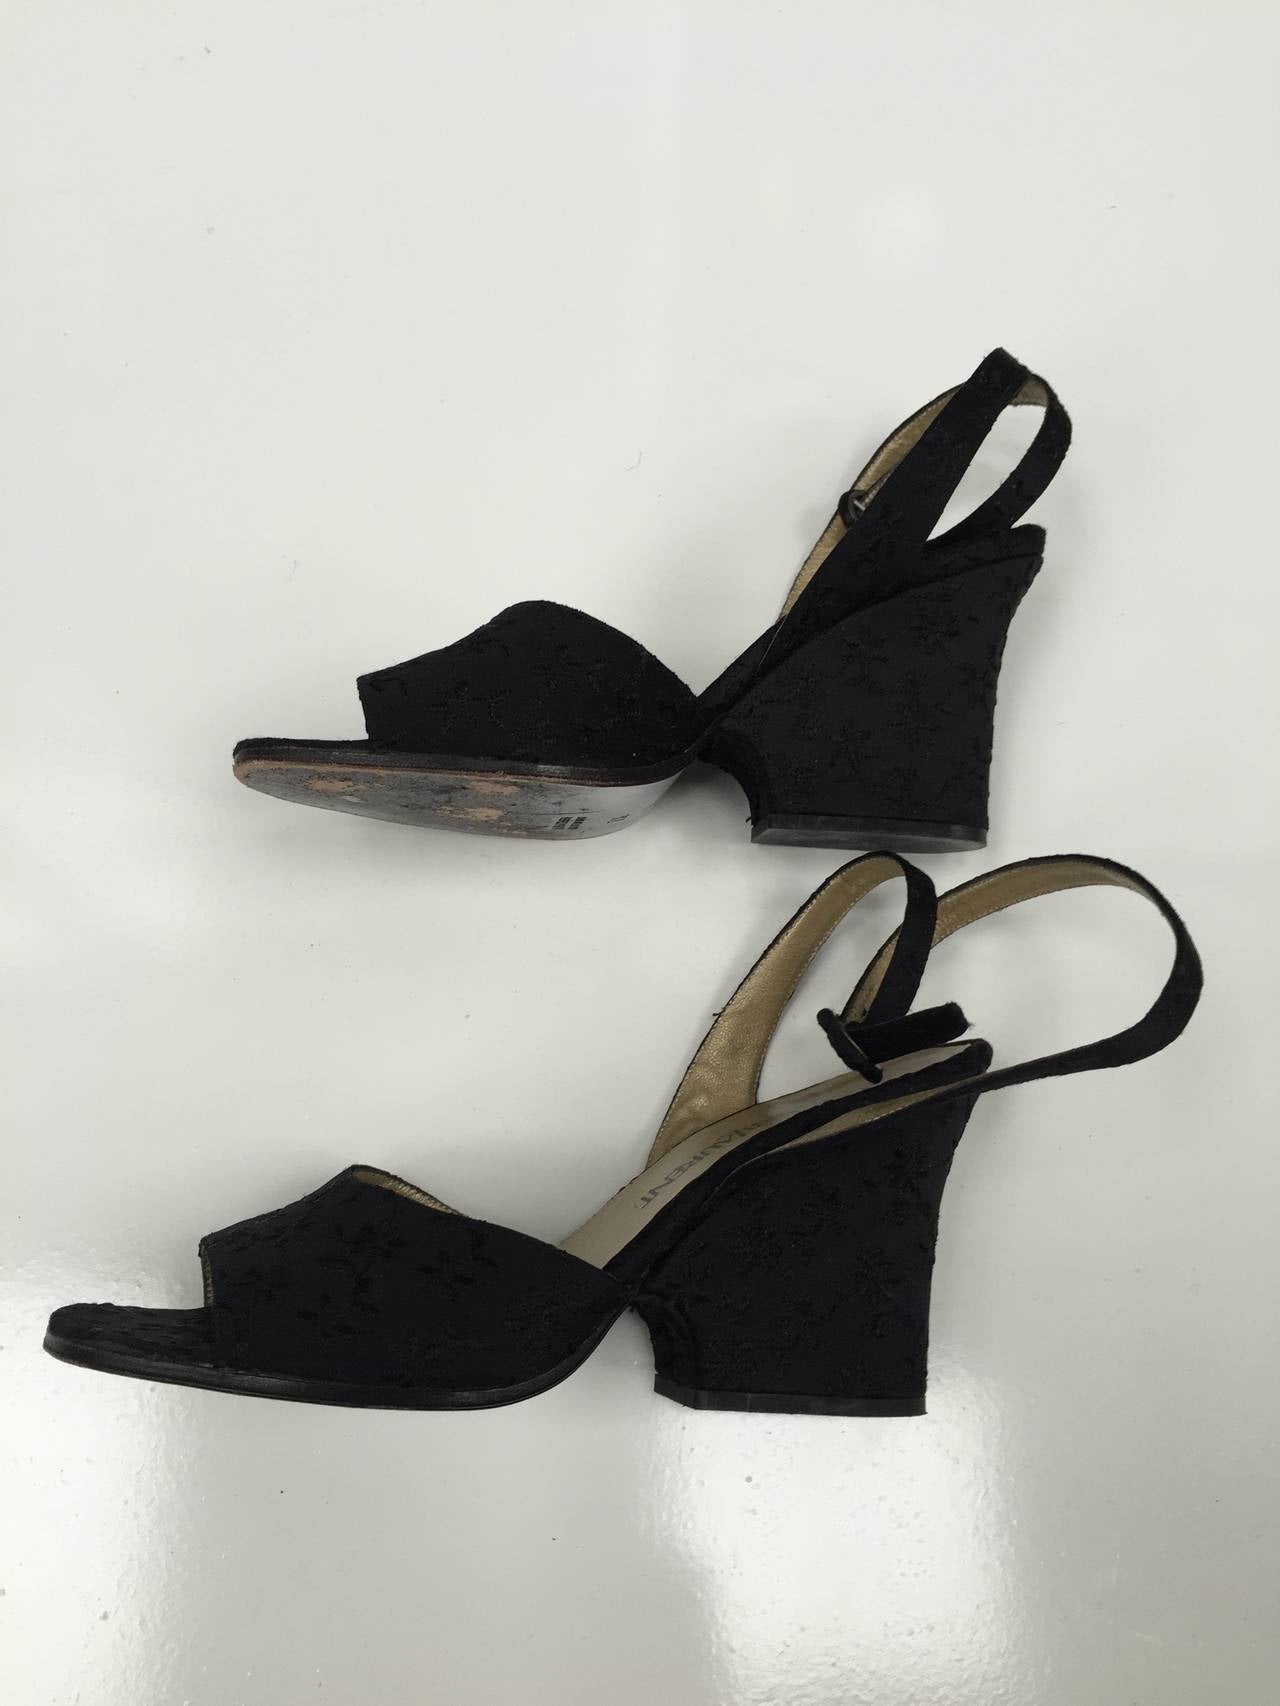 Yves Saint Laurent 1980s Black Ankle Strap Shoes Size 7.5 M. For Sale ...